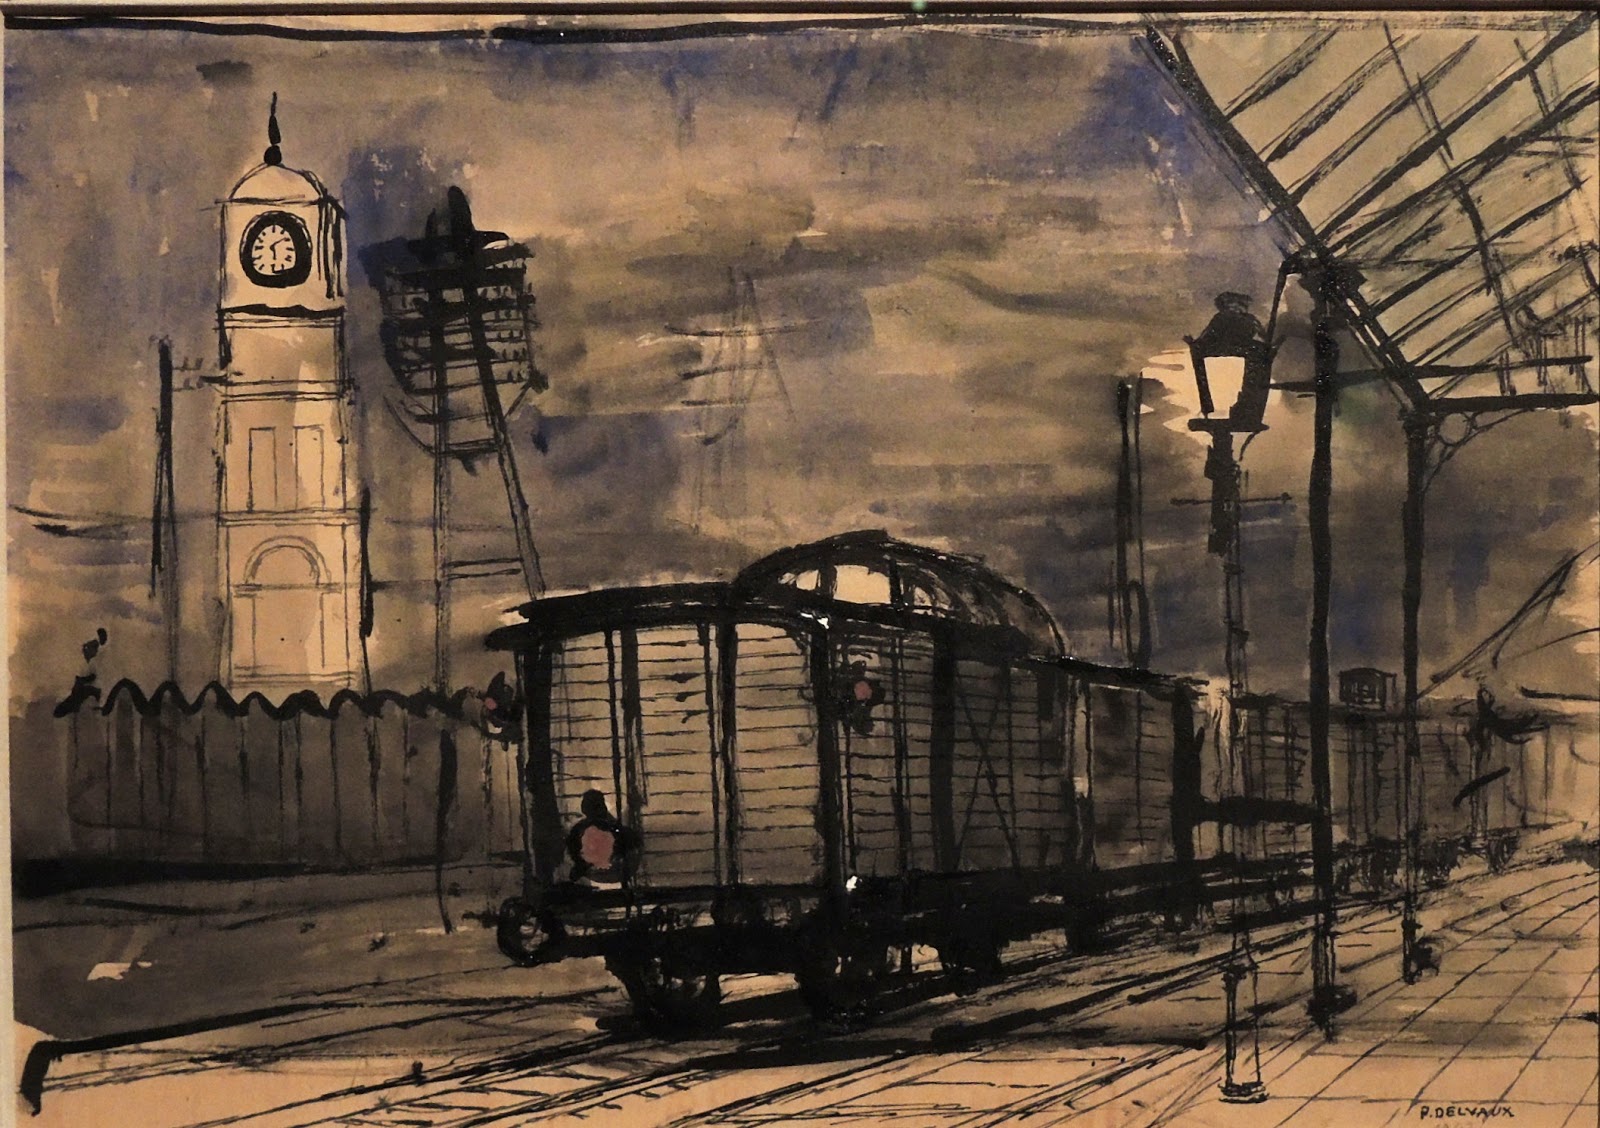 Moois van ' M(i)e': Brussel: en schilderijen Paul Delvaux in Train World